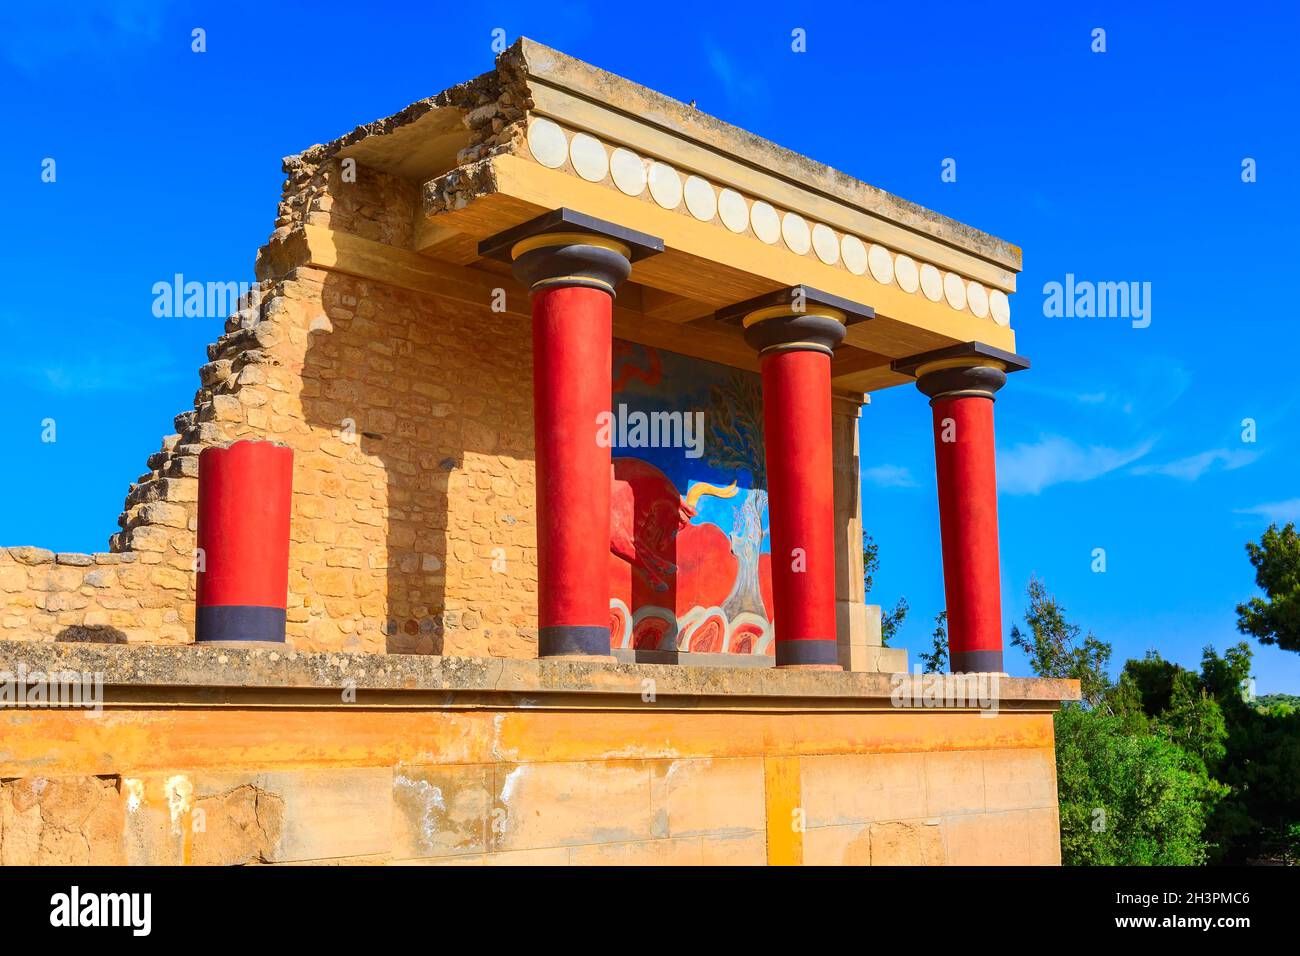 Knossos, ruines de Crète du Palais Minoen, Grèce Banque D'Images